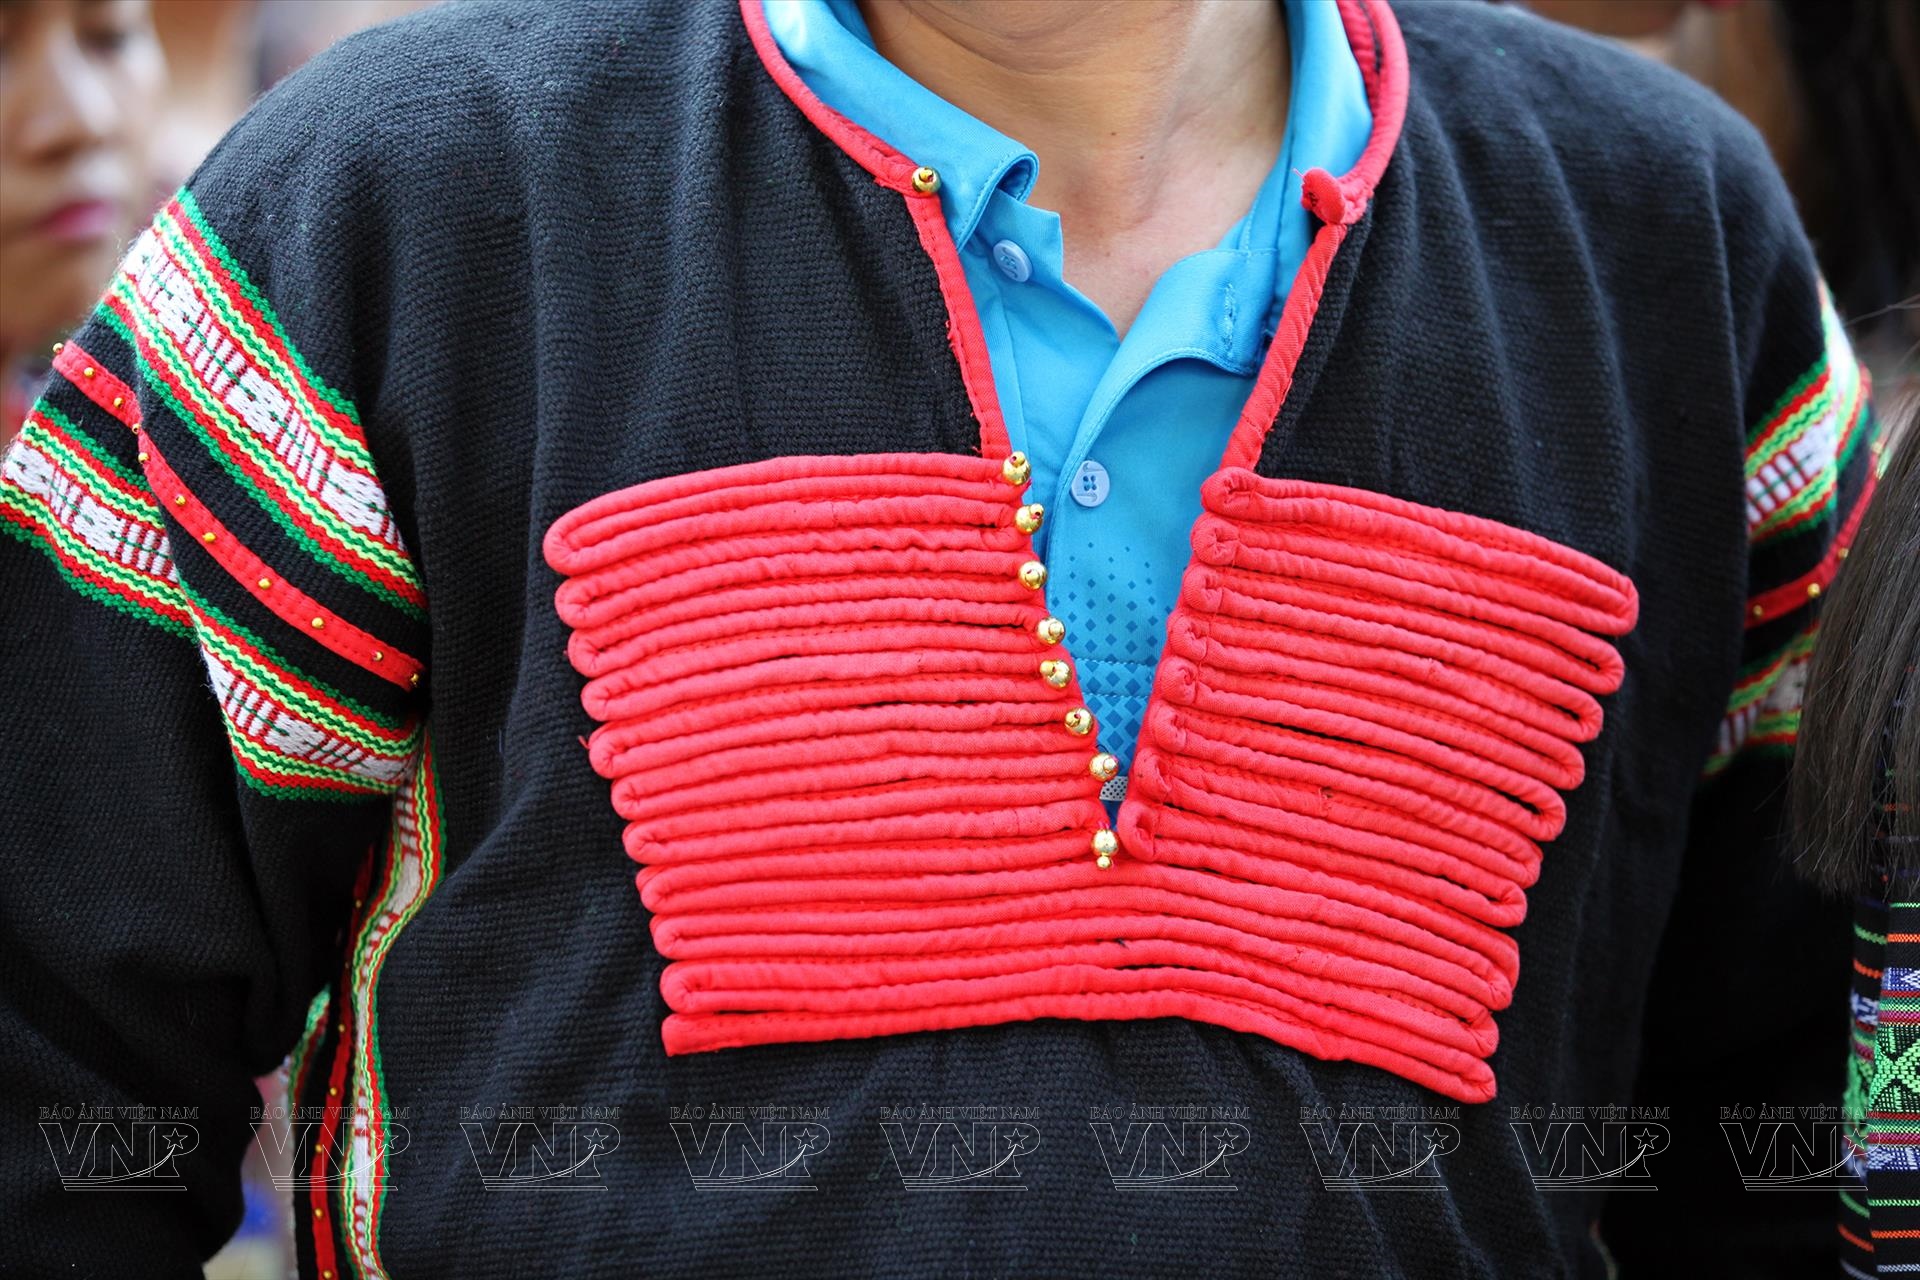 Trang phục truyền thống của người Ede đầy màu sắc và đẹp mắt. Những bộ trang phục này thể hiện sự tinh tế và sự khéo léo trong việc thêu thùa, dệt đan. Một lần ngắm nhìn chúng là bạn sẽ được trải nghiệm không gian văn hóa của người dân vùng cao phía Nam.